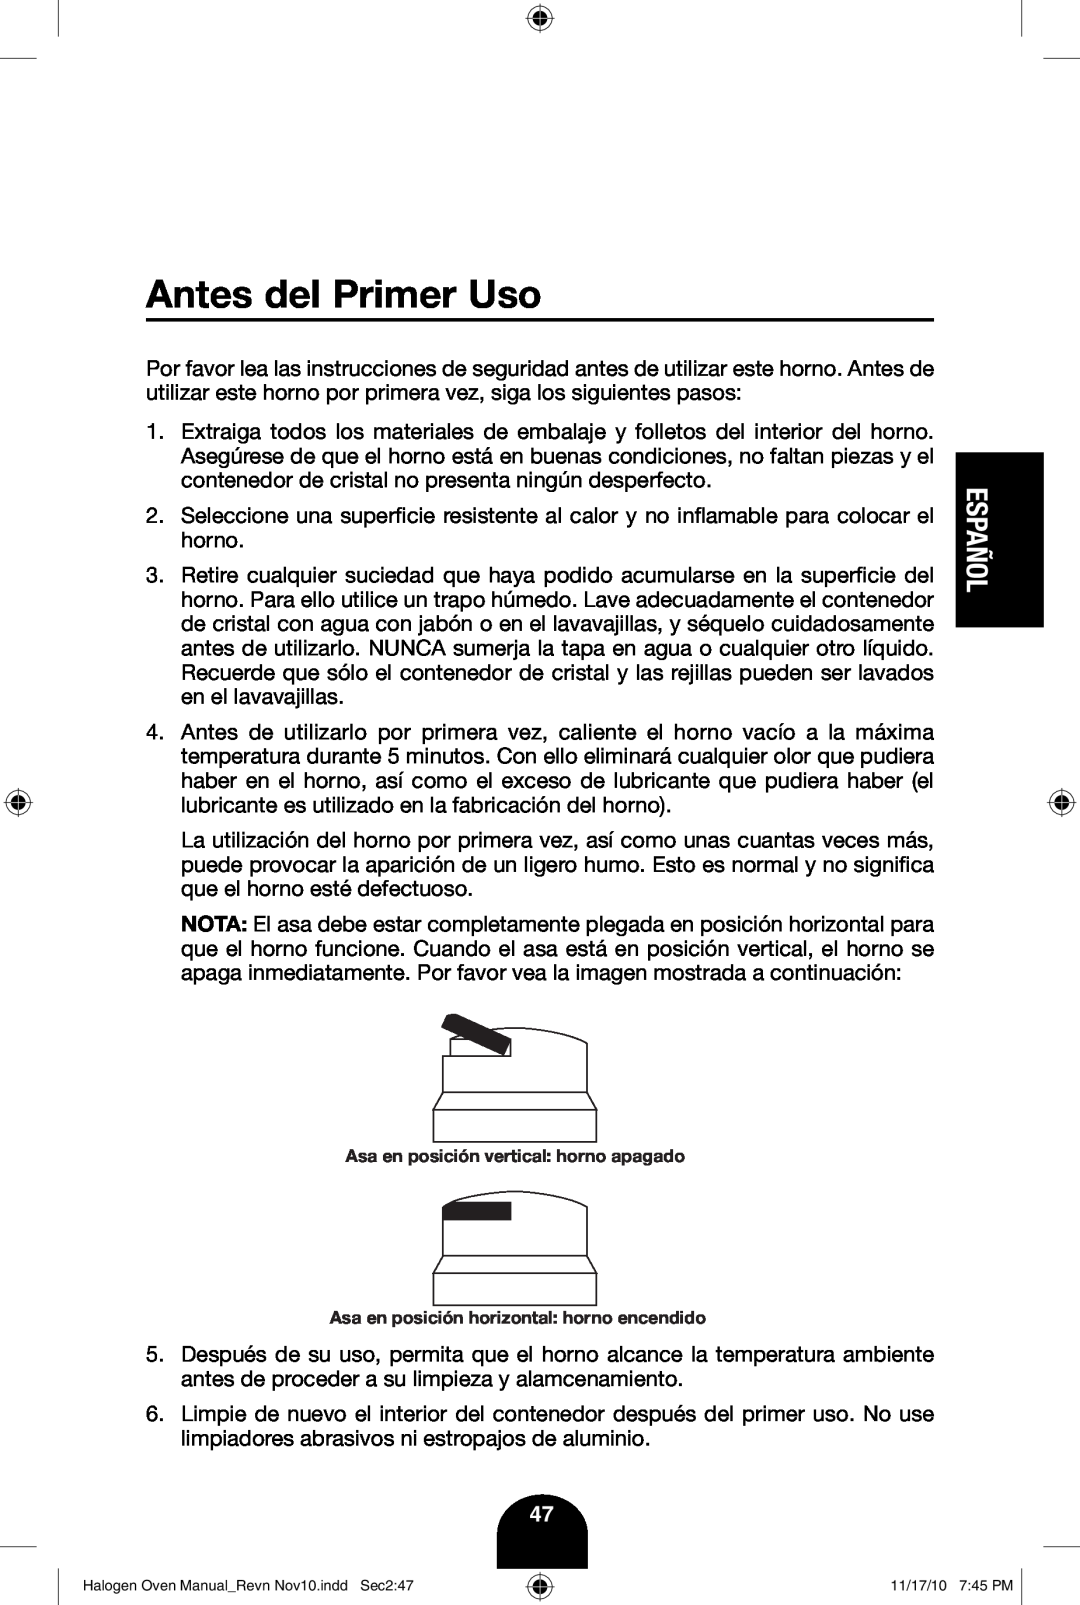 Fagor America 670040380 user manual Antes del Primer Uso, Español, Asa en posición vertical horno apagado 